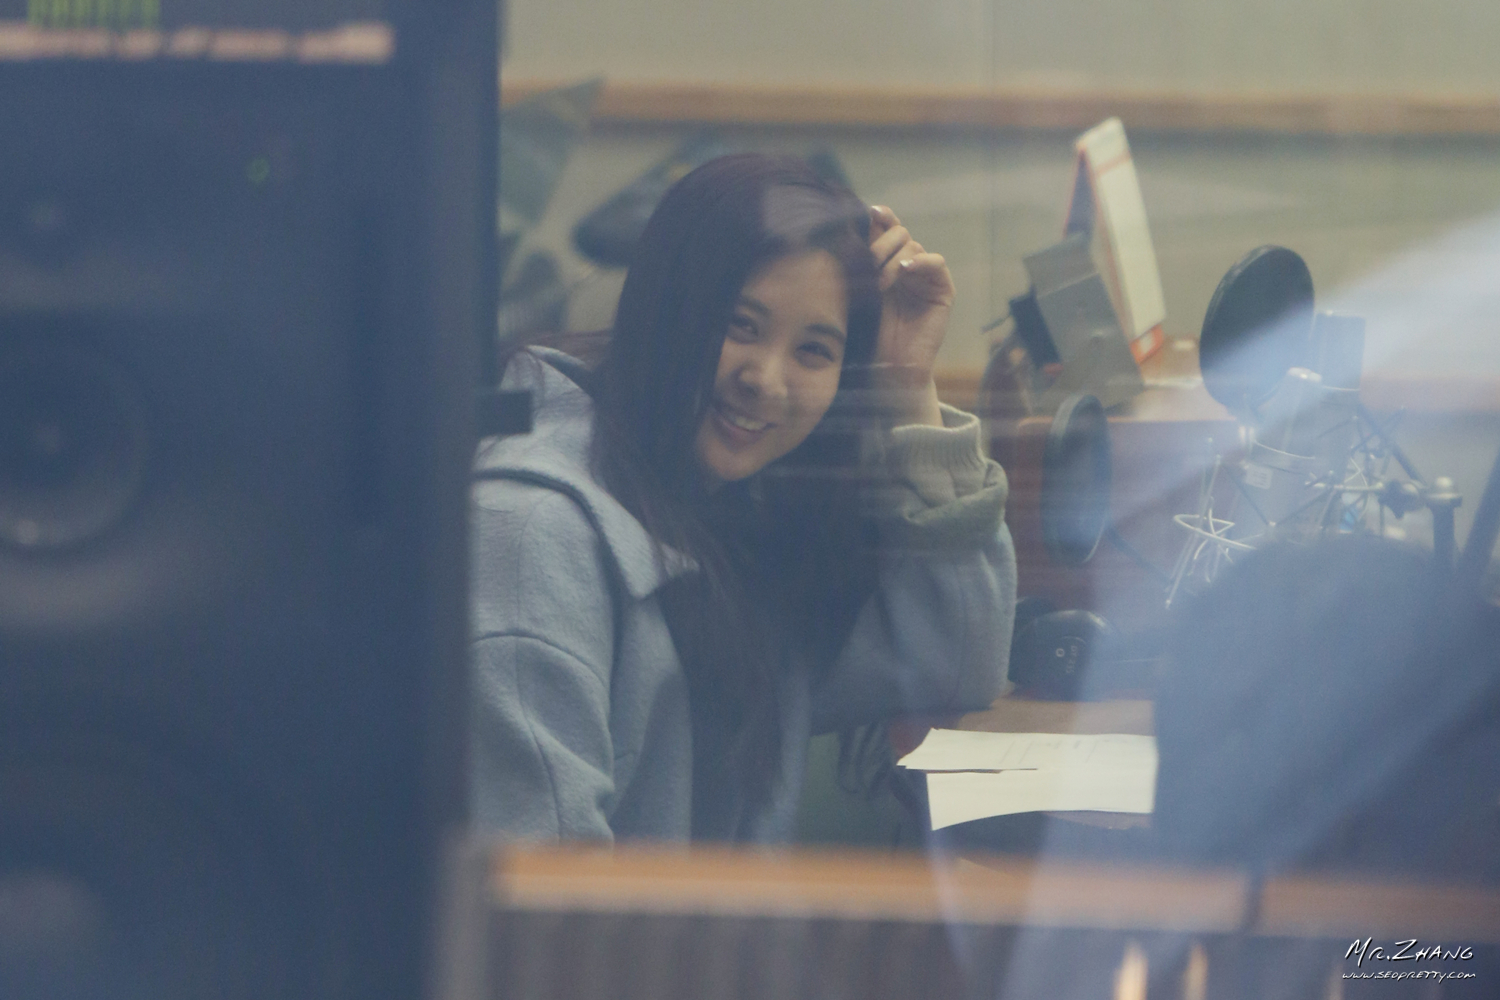 [PIC][12-03-2014]Yuri - Jessica và SeoHyun xuất hiện tại 2 chương trình Radio "SBS PowerFM Kim ChangRyul Old School" và "KBS Cool FM Jo Jungchi & Harim's 2 O'clock" vào chiều nay 2332393F5320316131230C